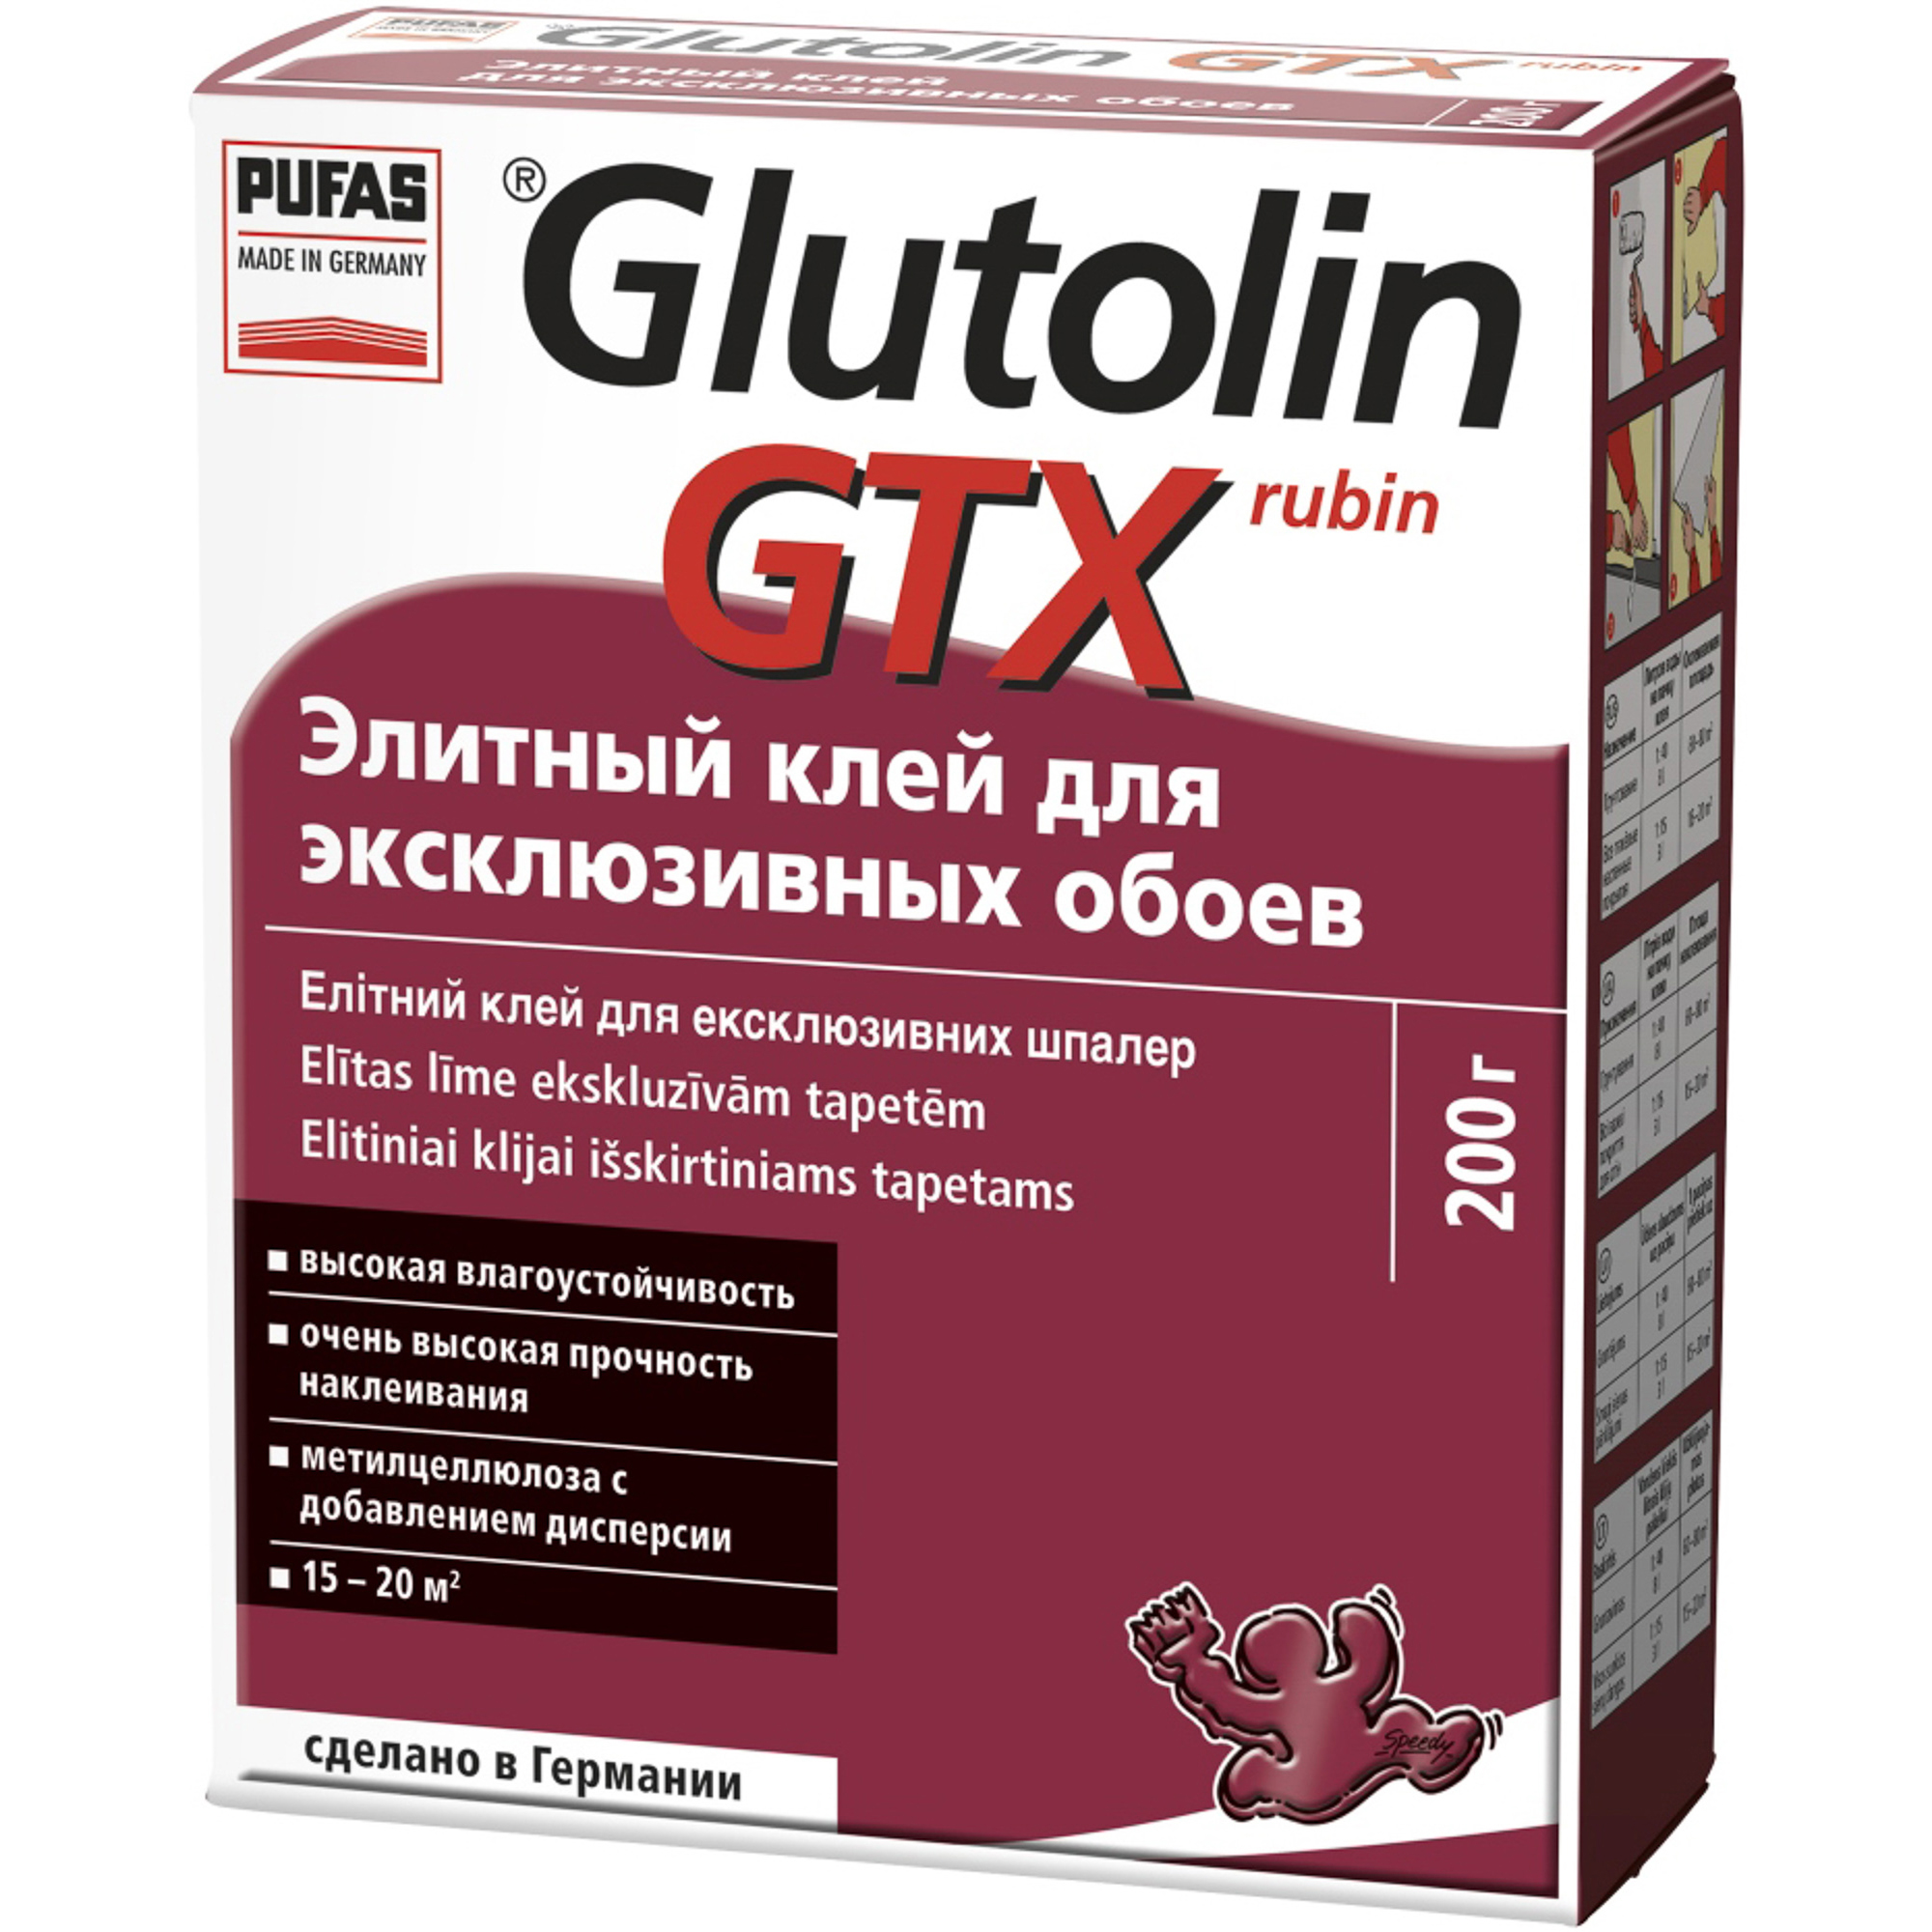 фото Клей pufas glutolin gtx rubin элитный для эксклюзивных обоев 200 г